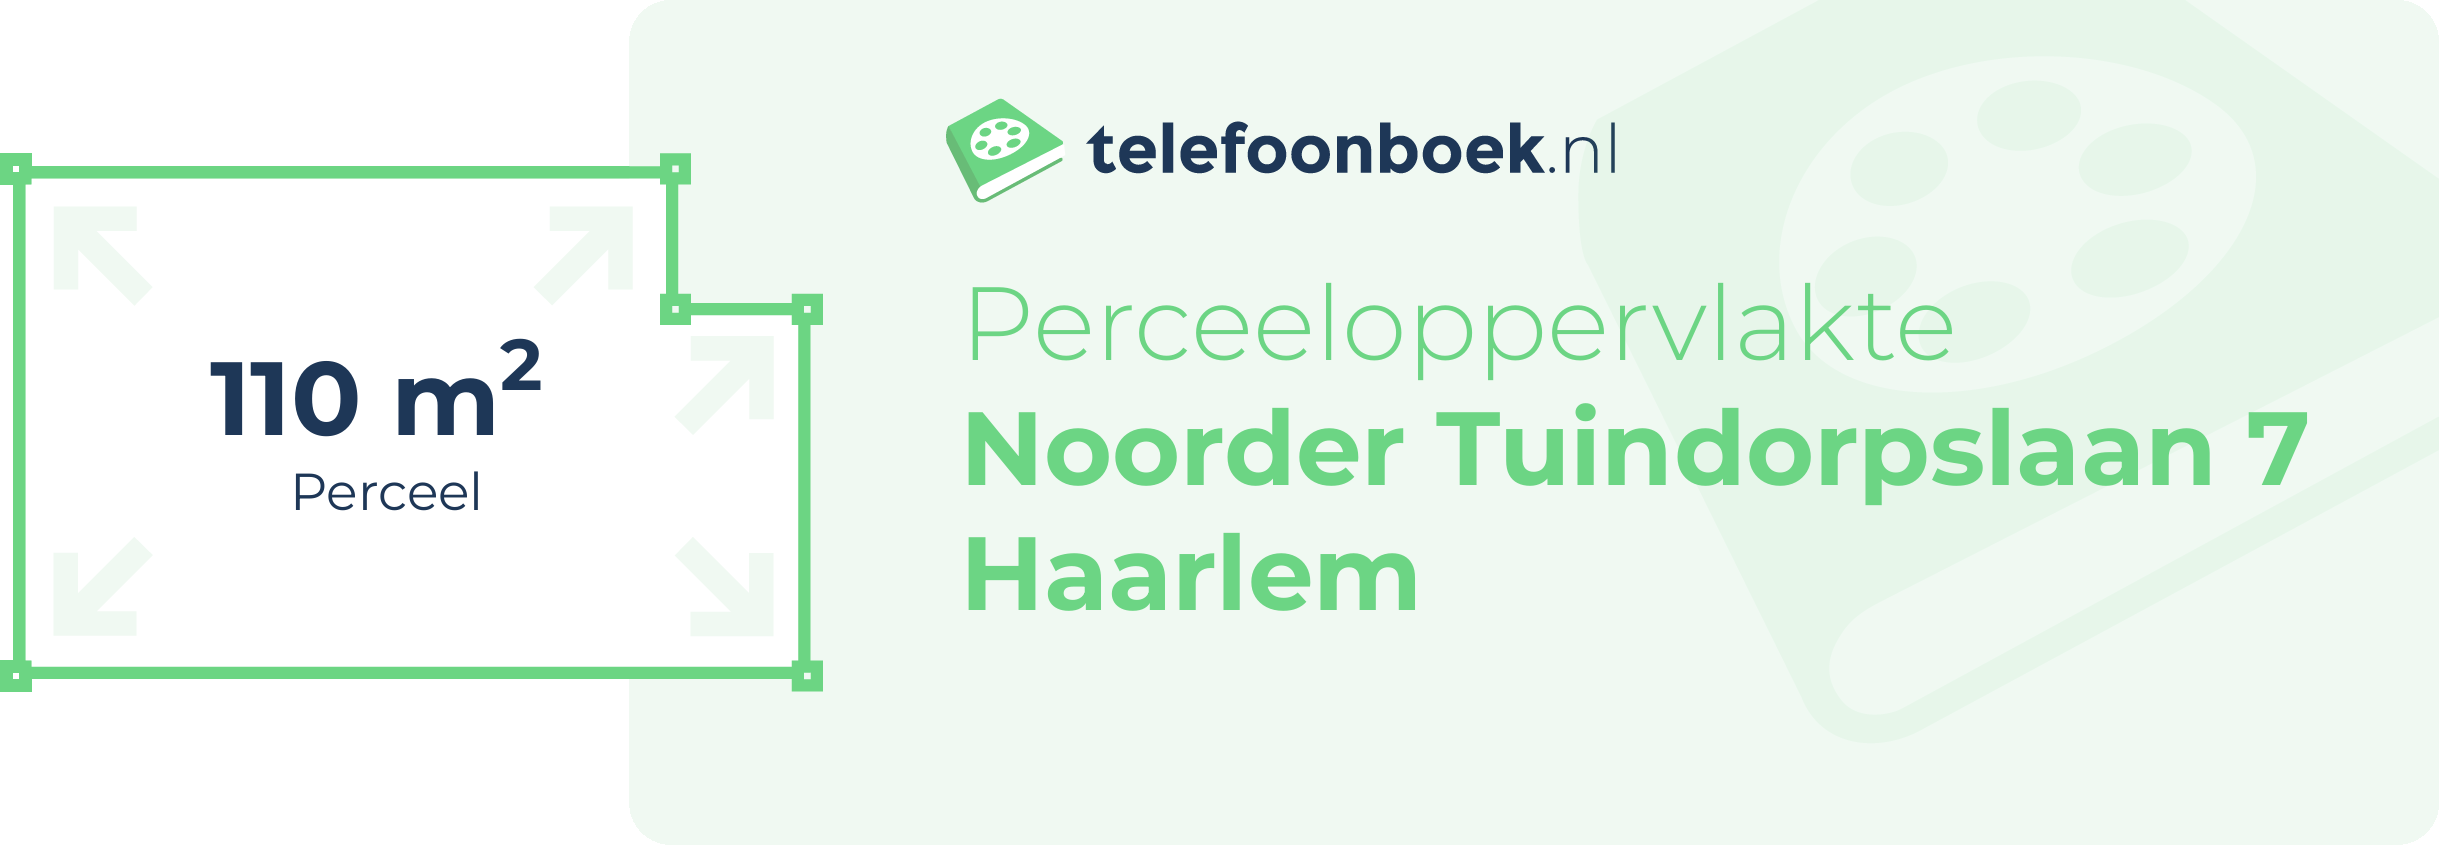 Perceeloppervlakte Noorder Tuindorpslaan 7 Haarlem